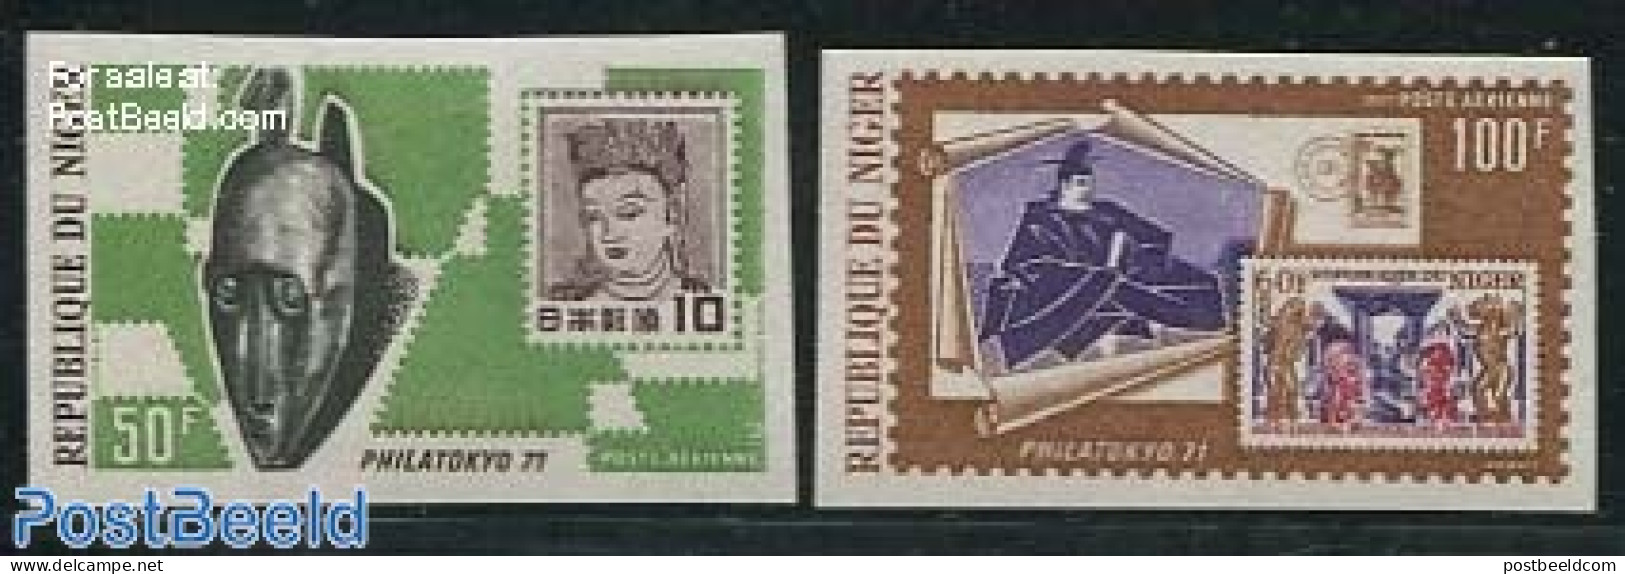 Niger 1971 Philatokyo 2v, Imperforated, Mint NH, Stamps On Stamps - Postzegels Op Postzegels